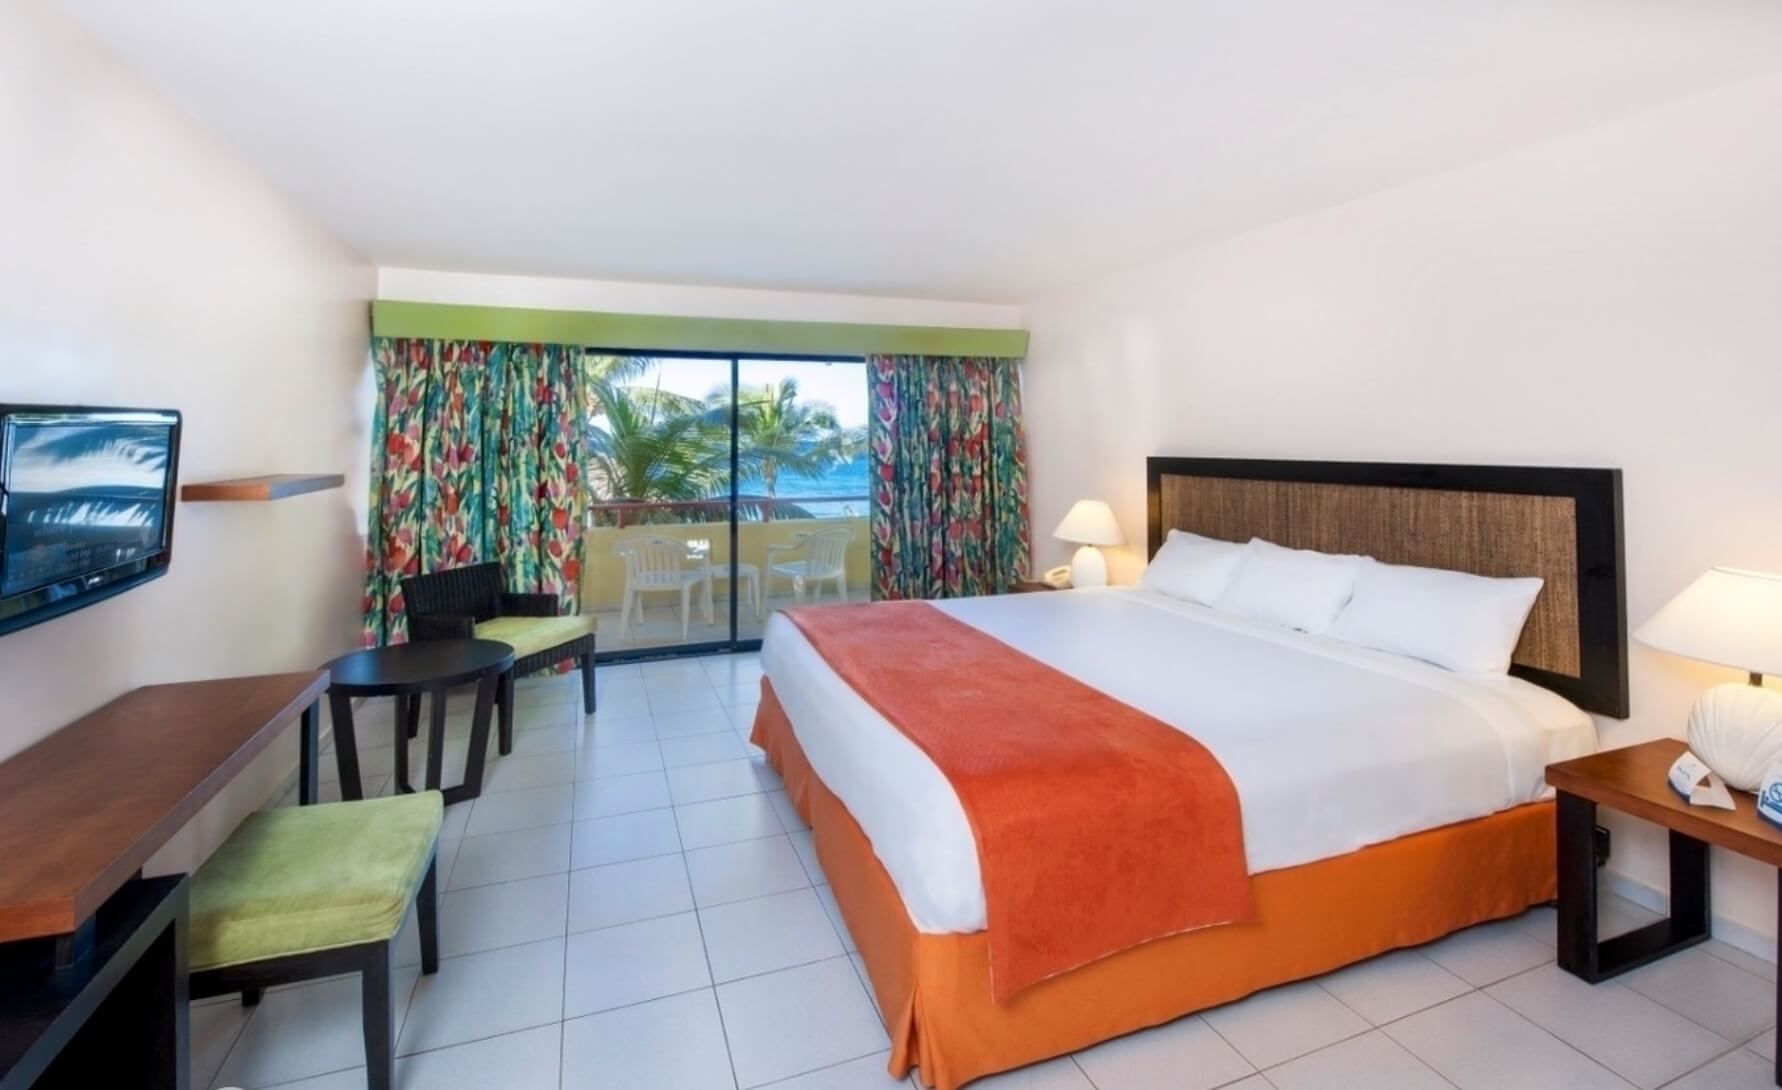 Тур в Пуэрто Плату на 11 ночей на двоих в отель Casa Marina Beach & Reef (Доминикана) с 31.05.18 от 117 442 рублей (AL)